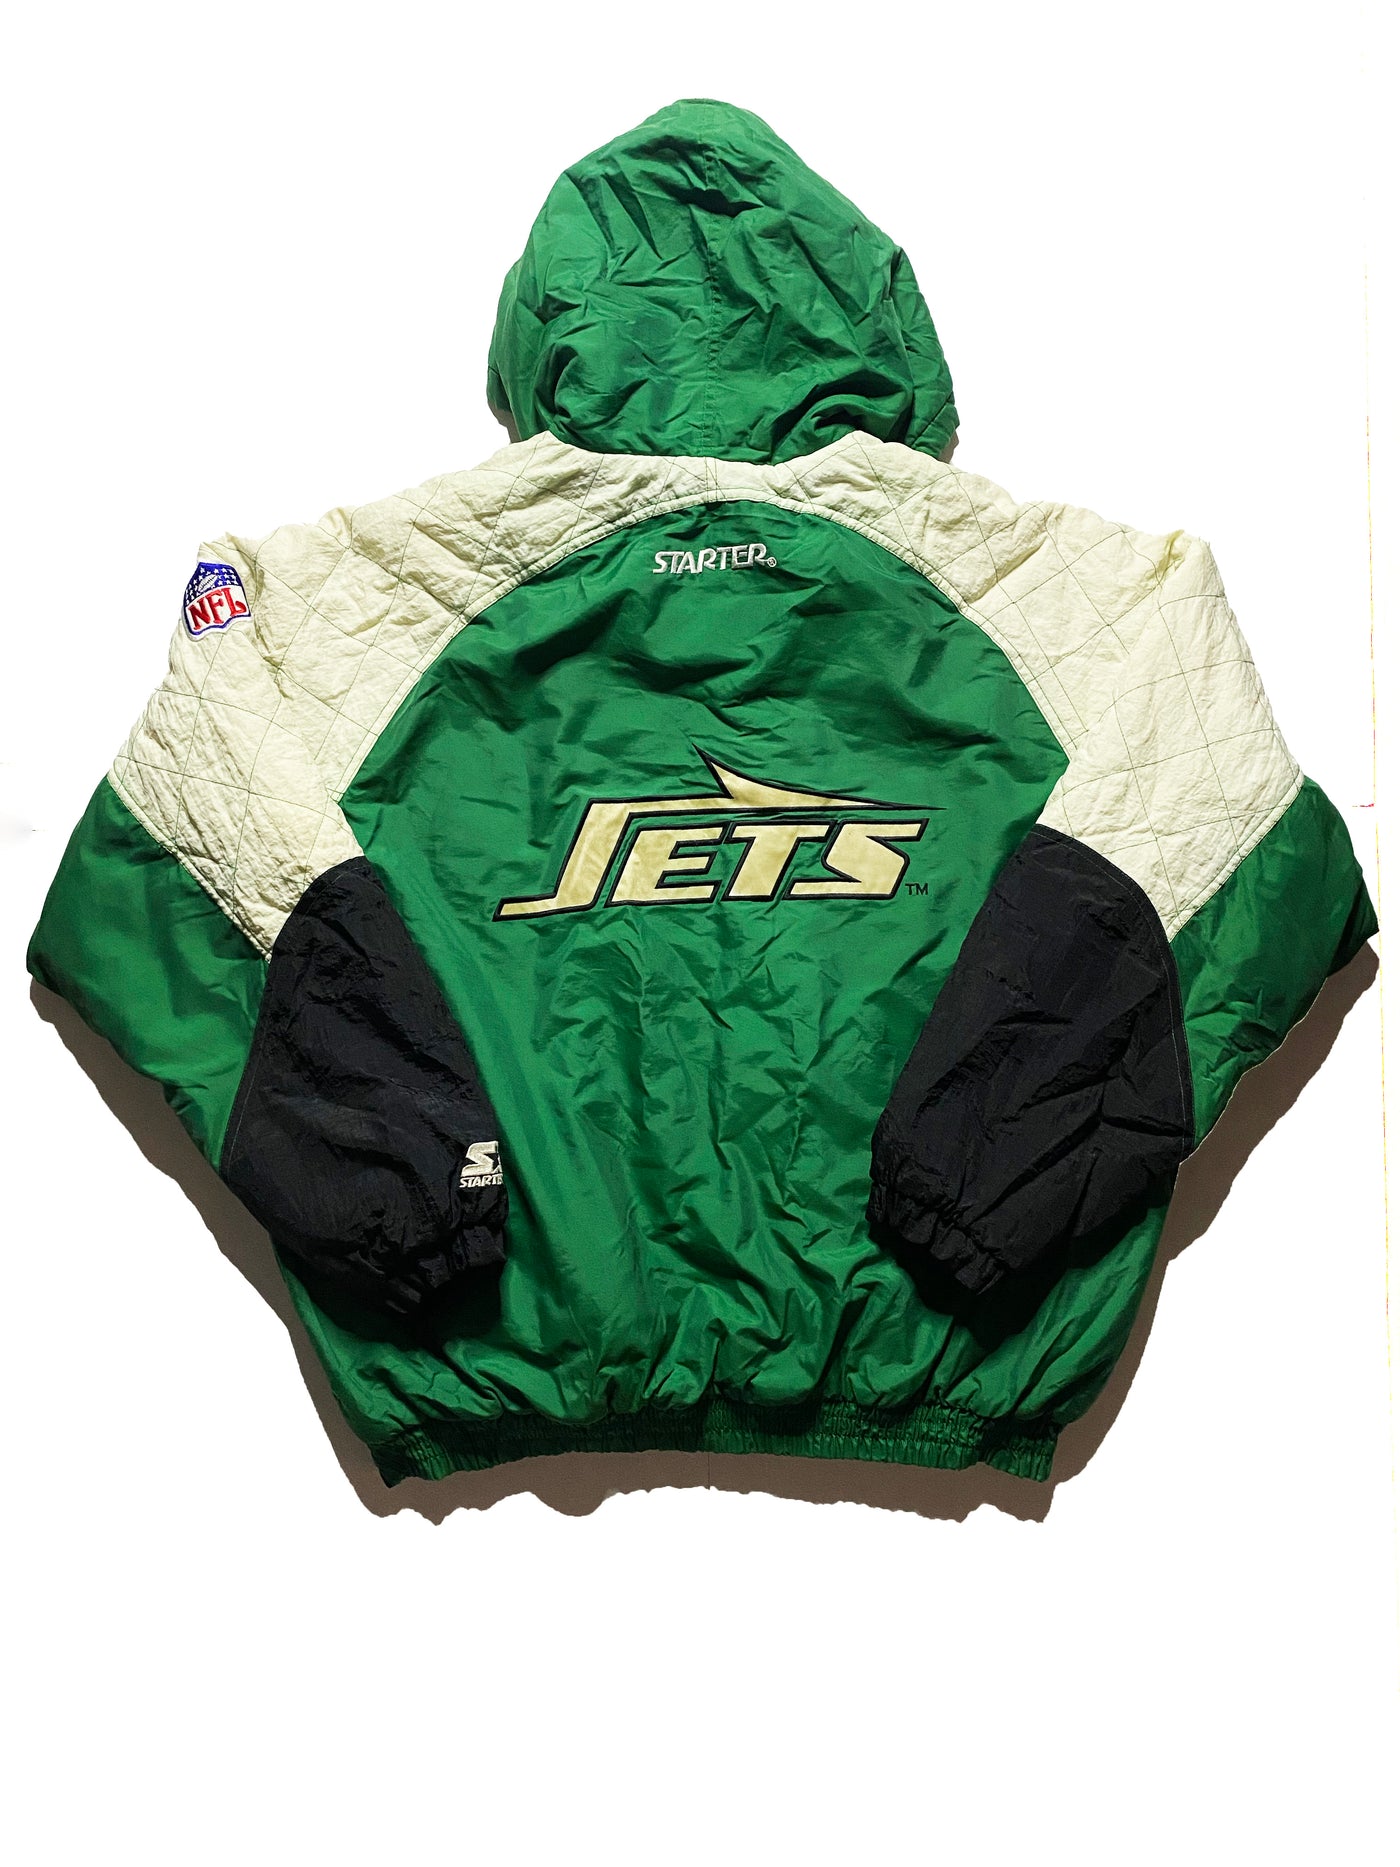 Vintage 90s New York Jets Starter Puffer Jacket